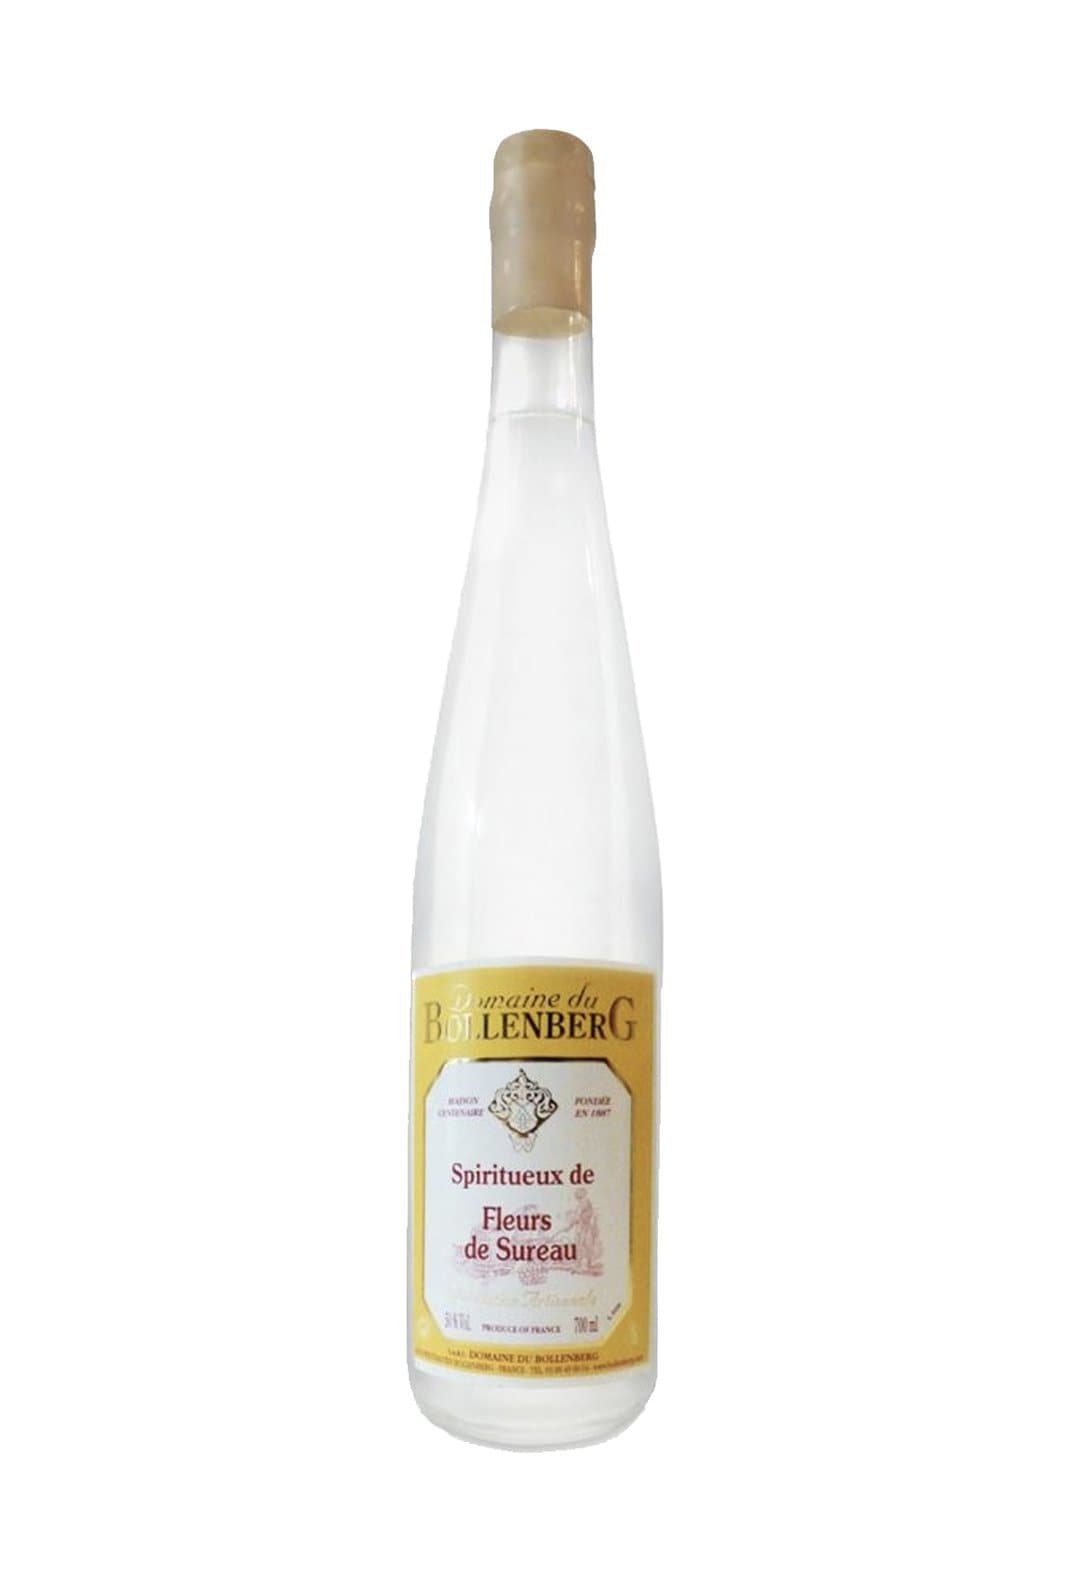 Bollenberg Eau de Vie de Fleurs de Sureau (Elderflower) 50% 350ml | Liqueurs | Shop online at Spirits of France